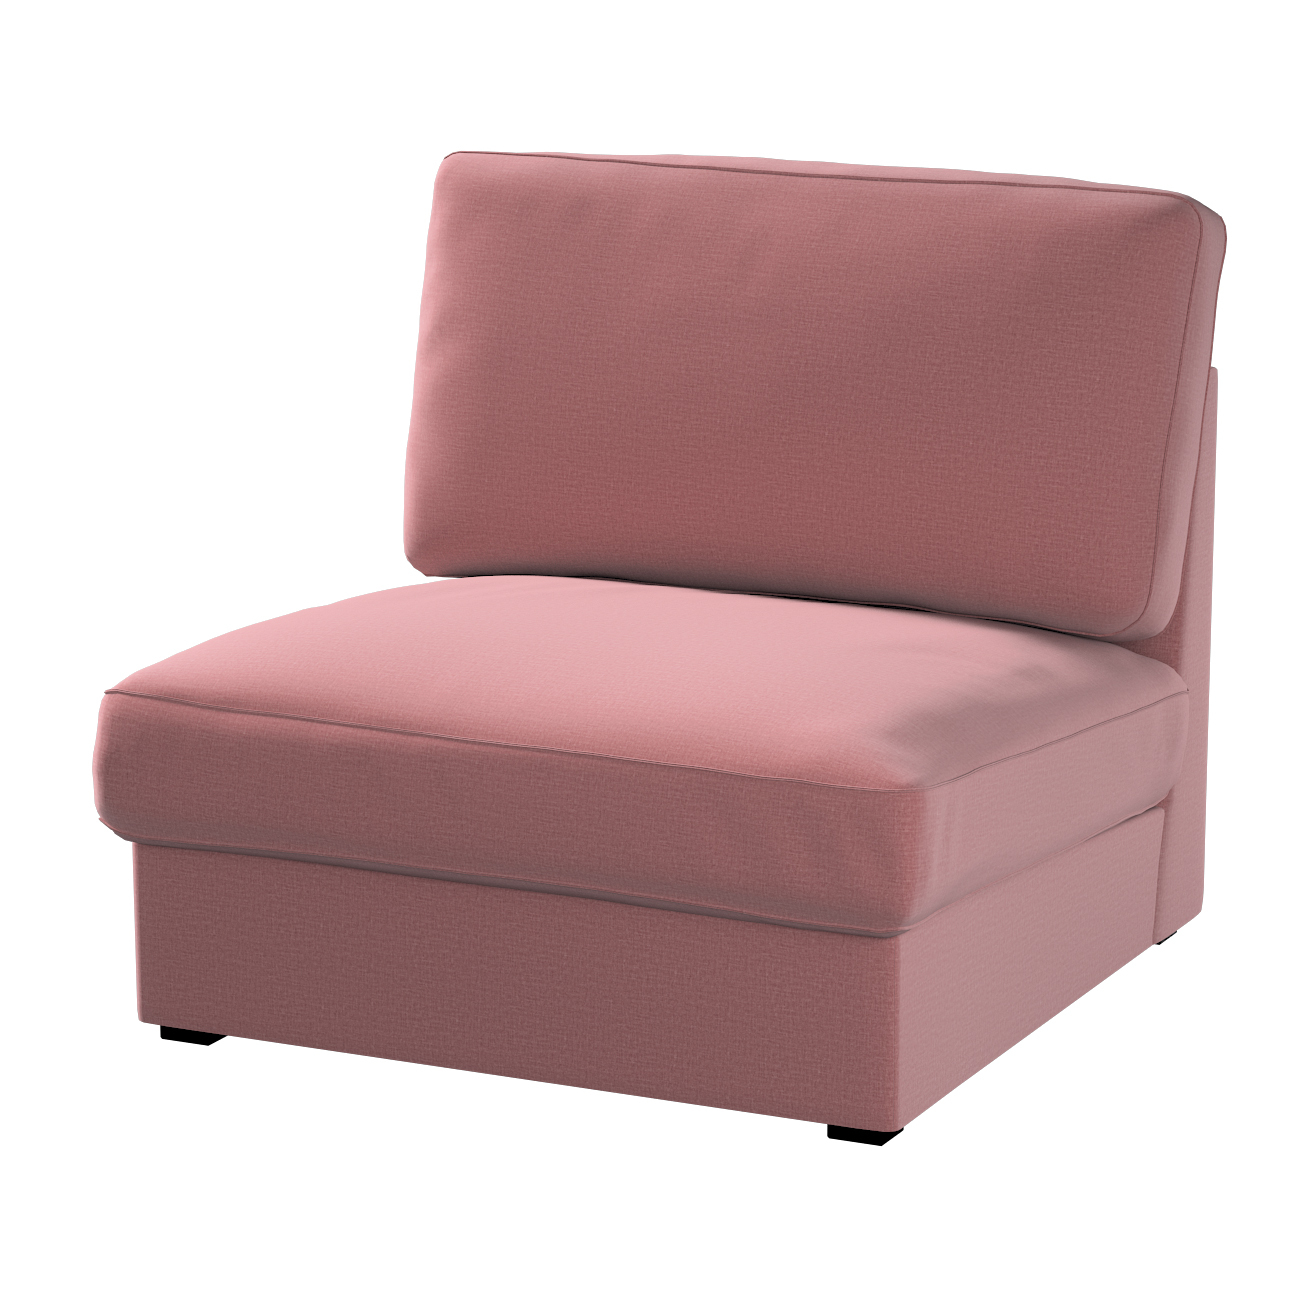 Bezug für Kivik Sessel nicht ausklappbar, violett, Bezug für Sessel Kivik, günstig online kaufen